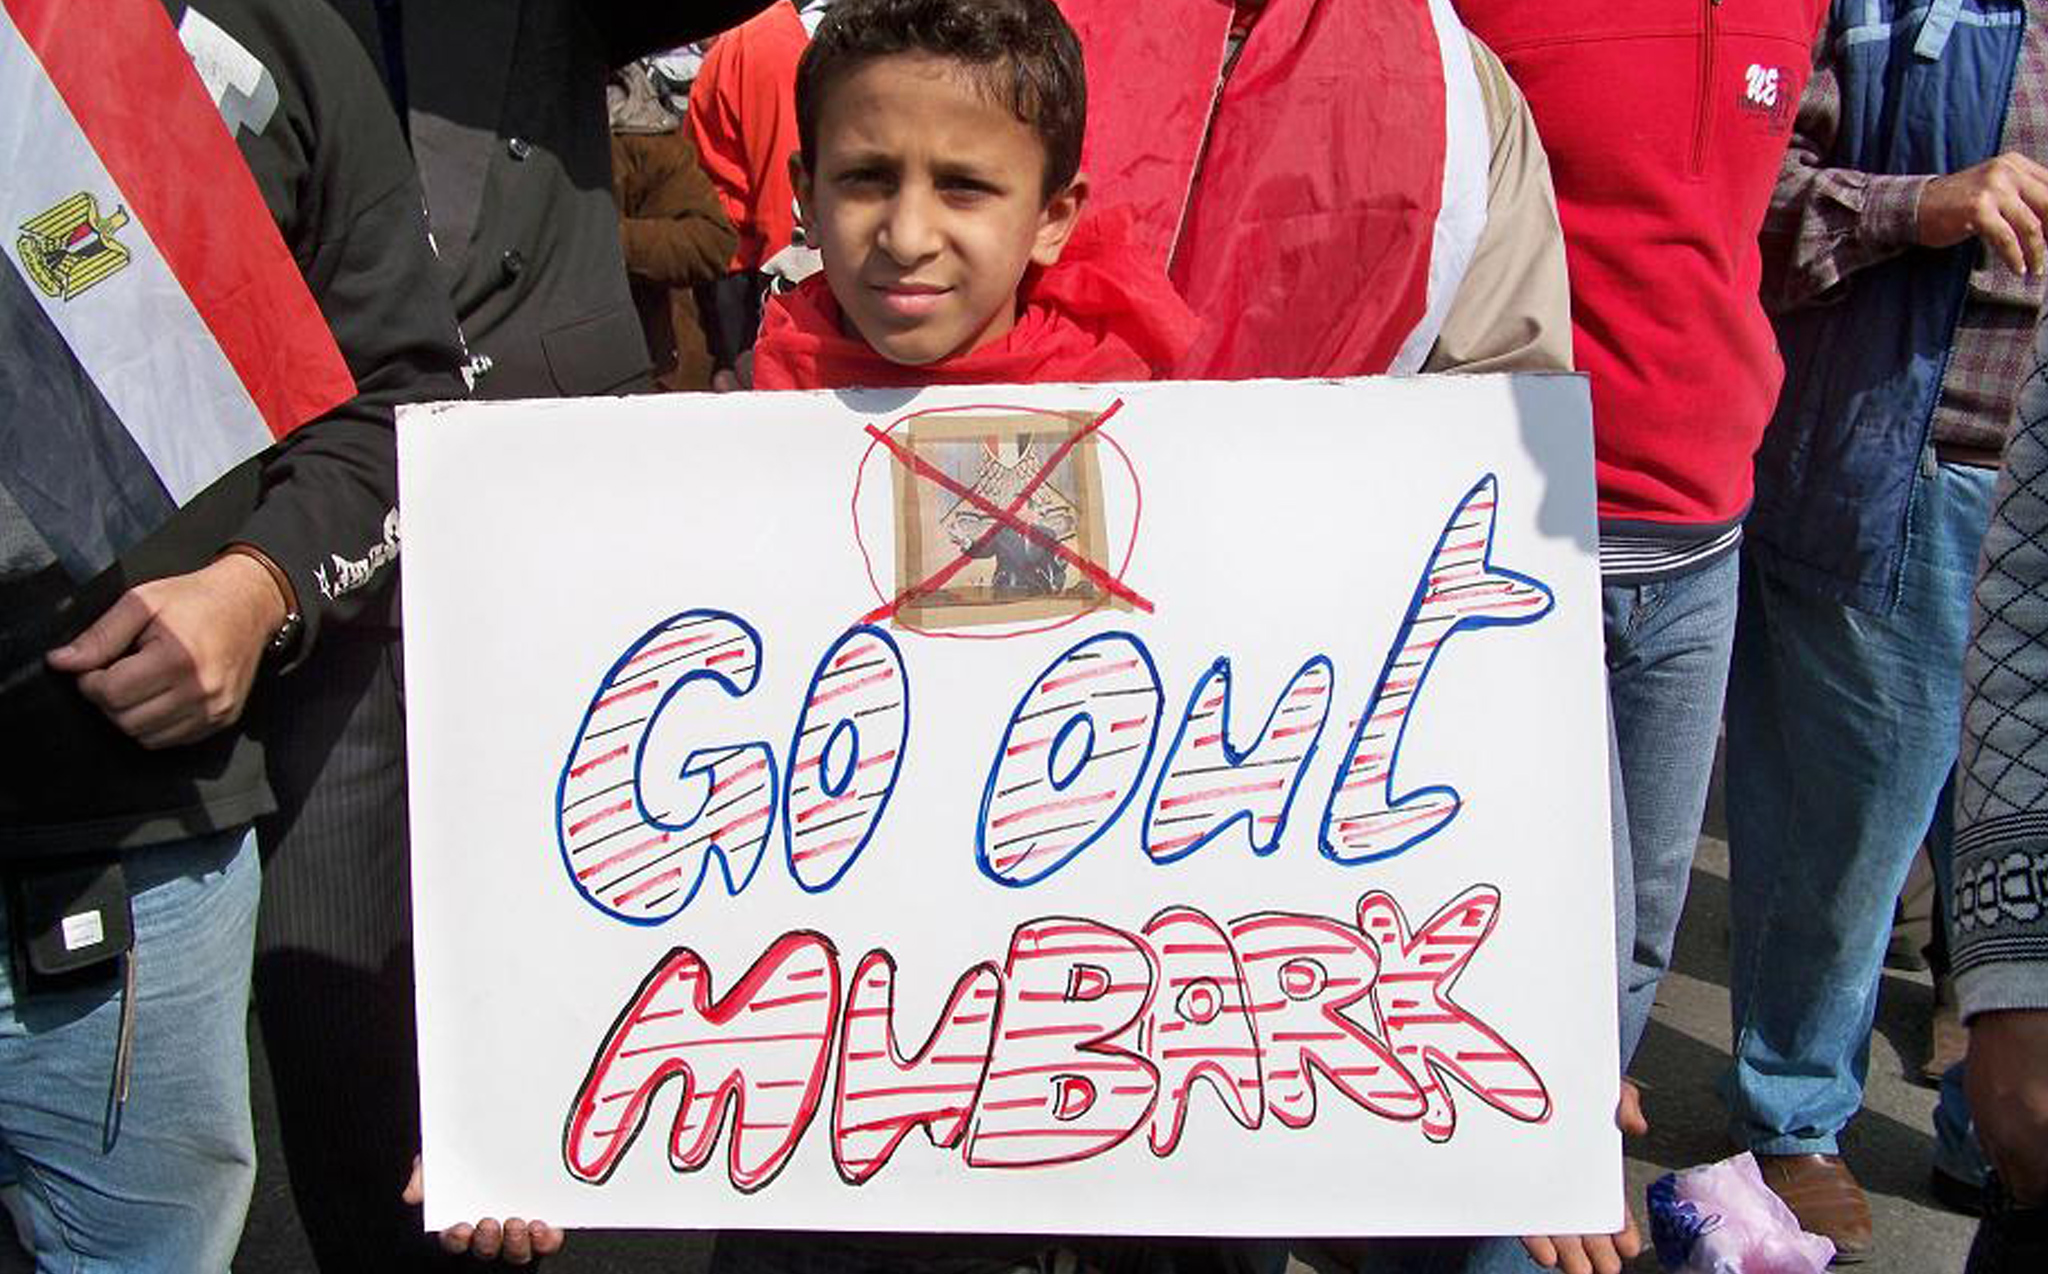 انضم الأطفال إلى المظاهرات عندما اطمأن عليهم أولياؤهم.<br>
(الصورة لعادل قسطل)